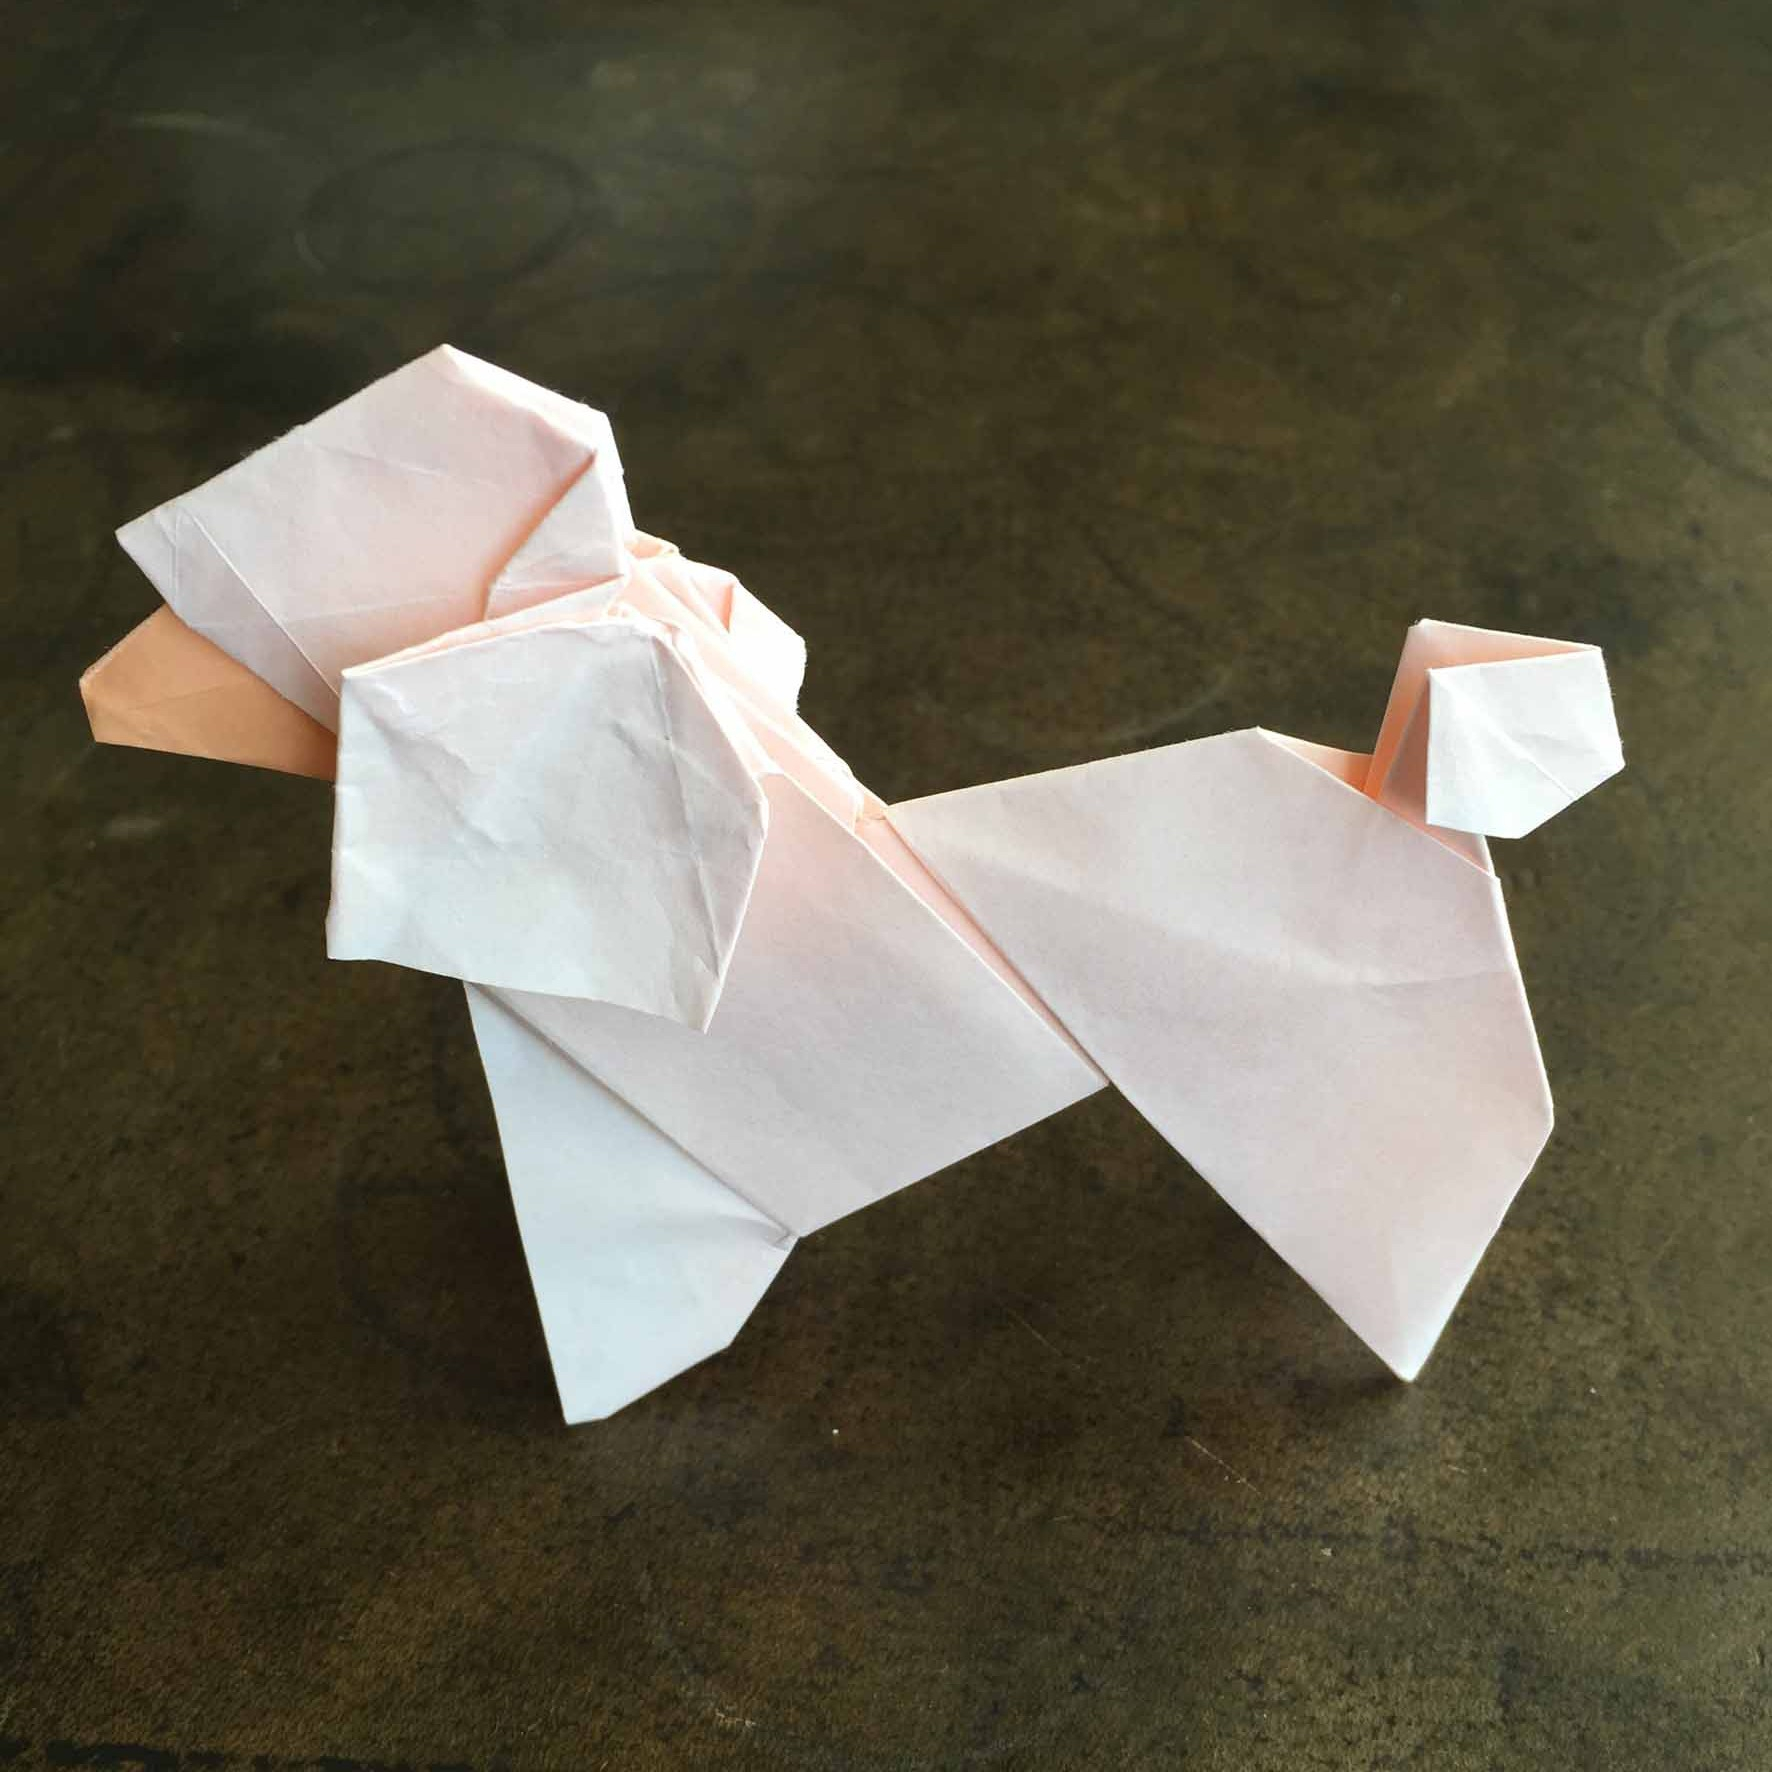 Origami Poodle Instructions Origami Database Creator